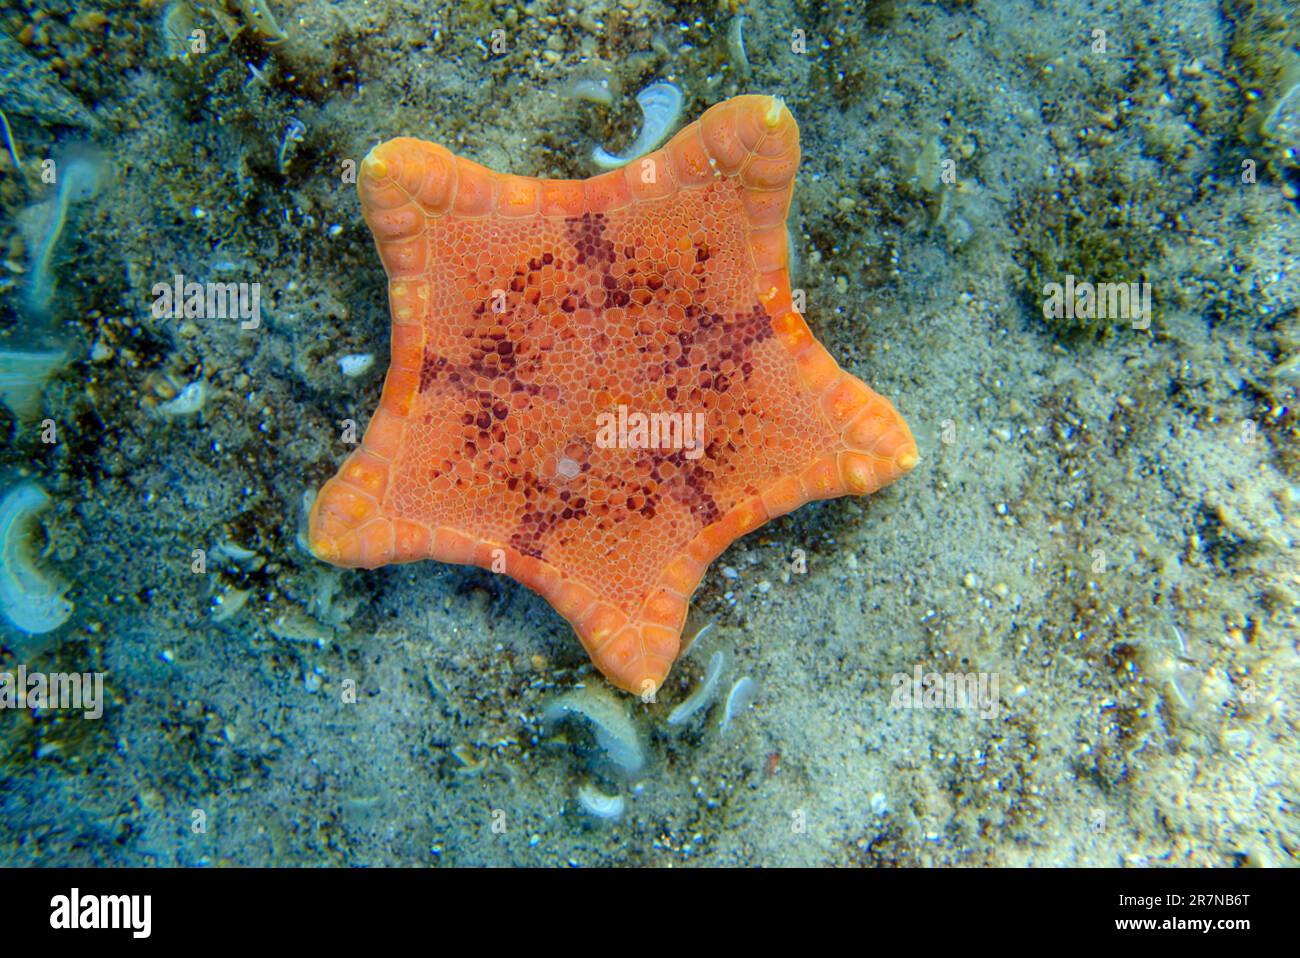 Placenta biscuit starfish, Underwater image into the Mediterranean Sea - (Sphaerodiscus placenta) Stock Photo